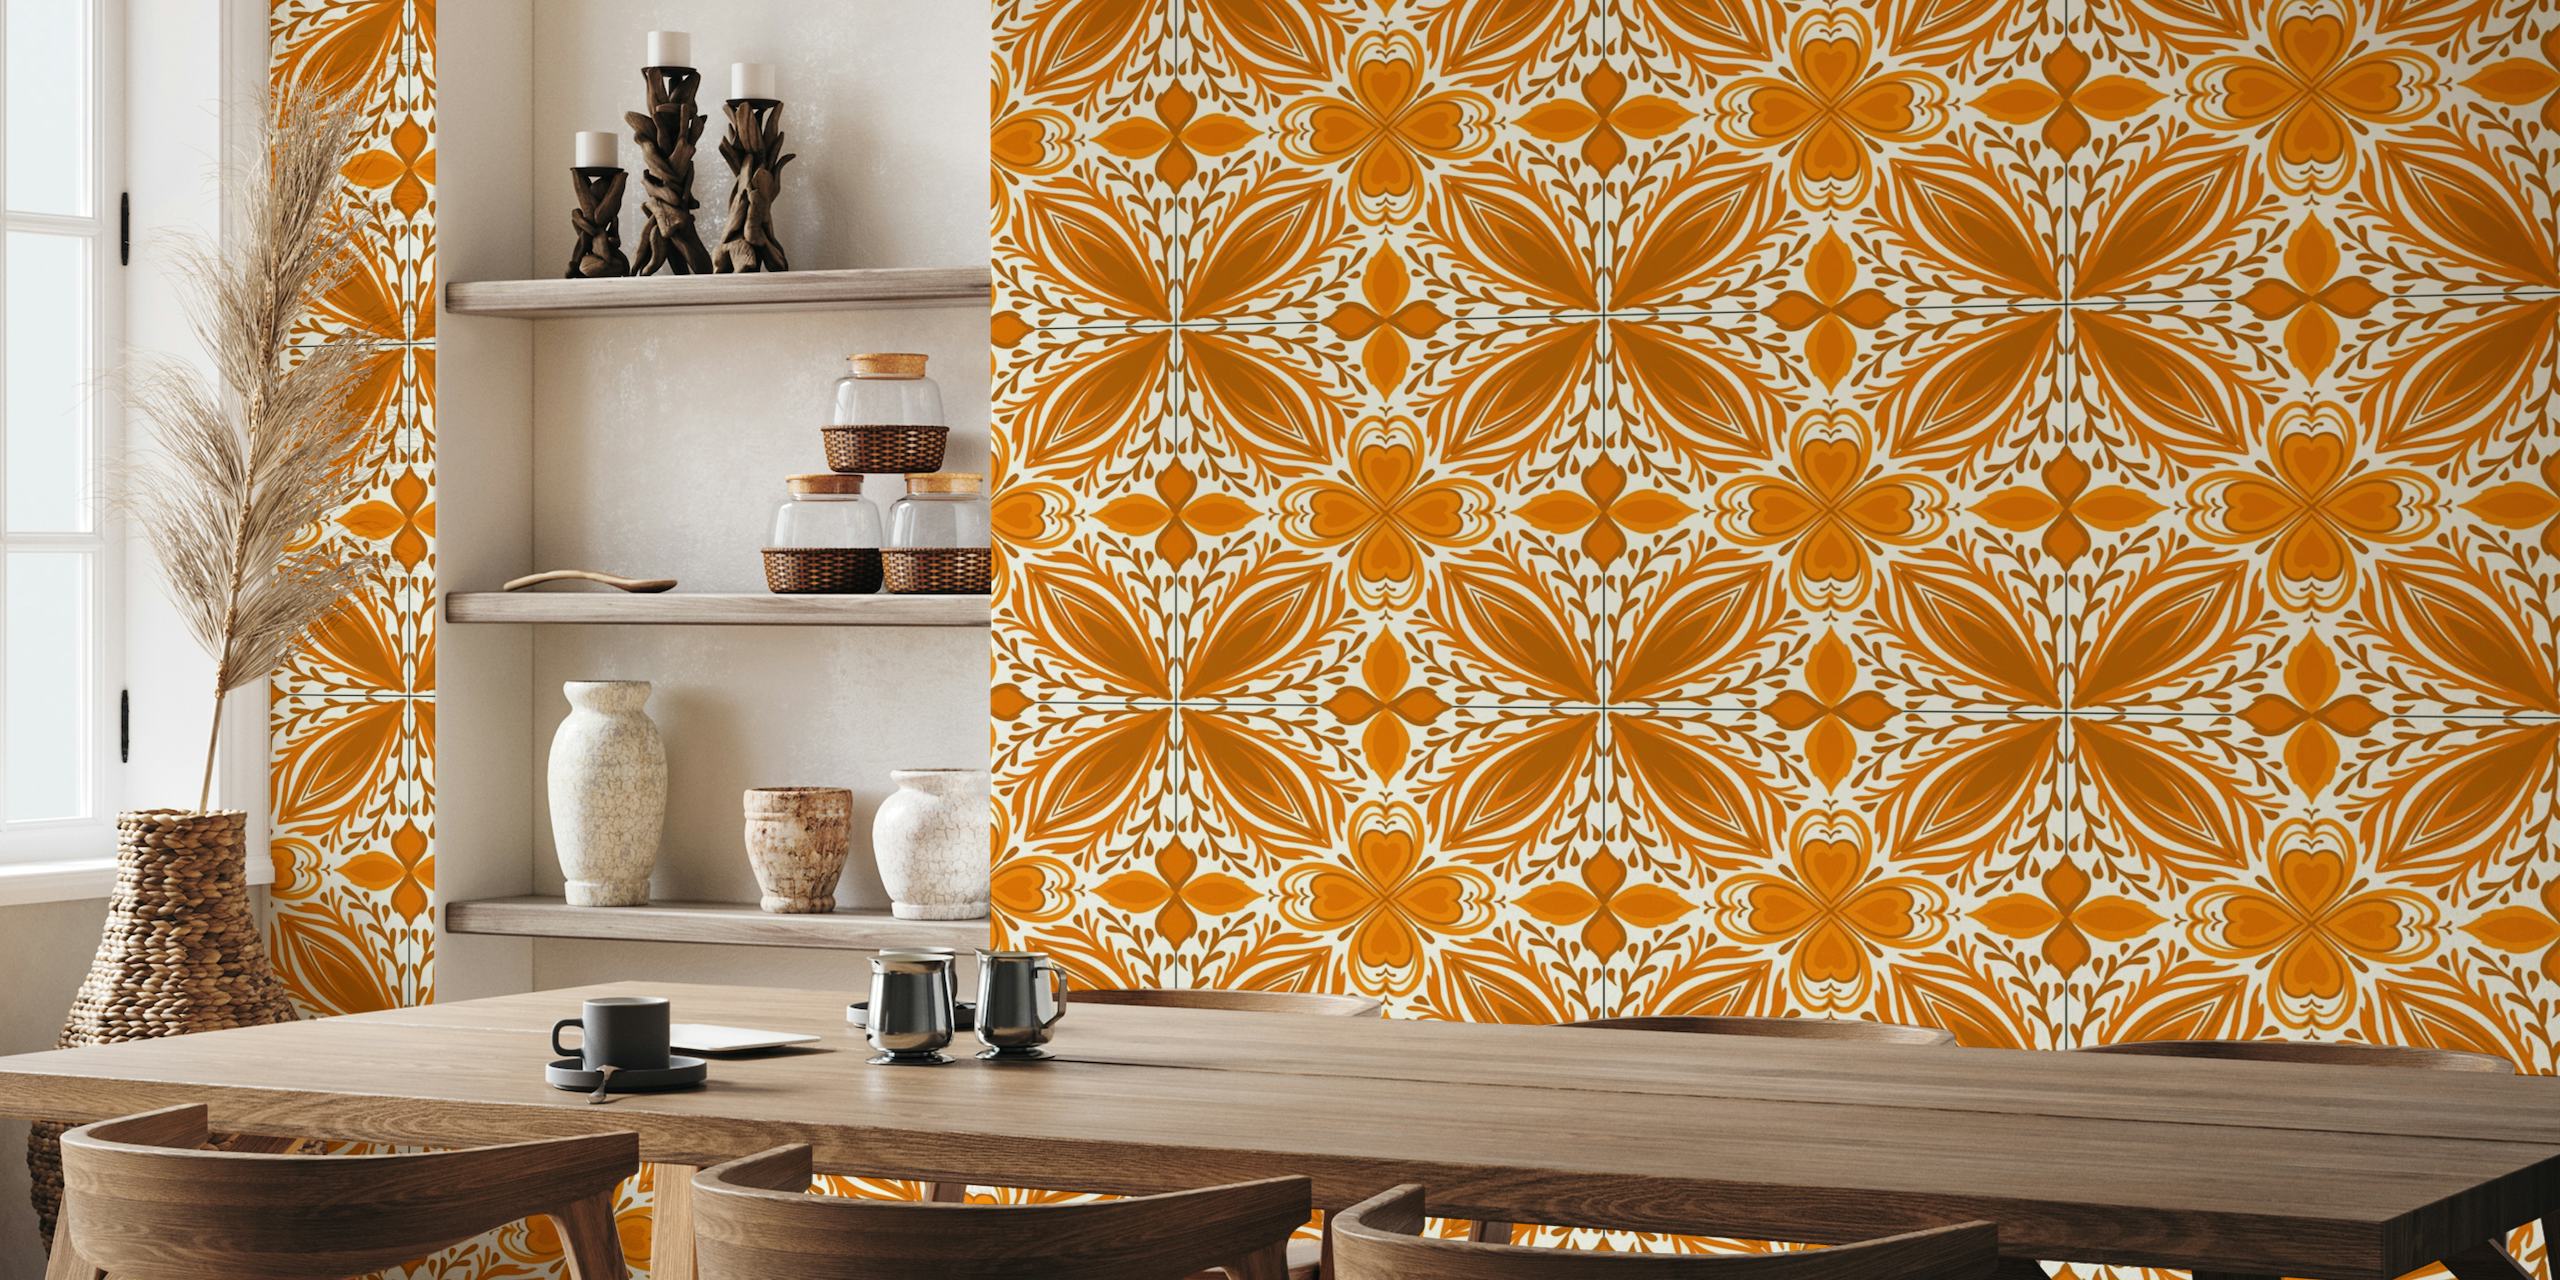 Ornate tiles, yellow and orange 4 papel pintado